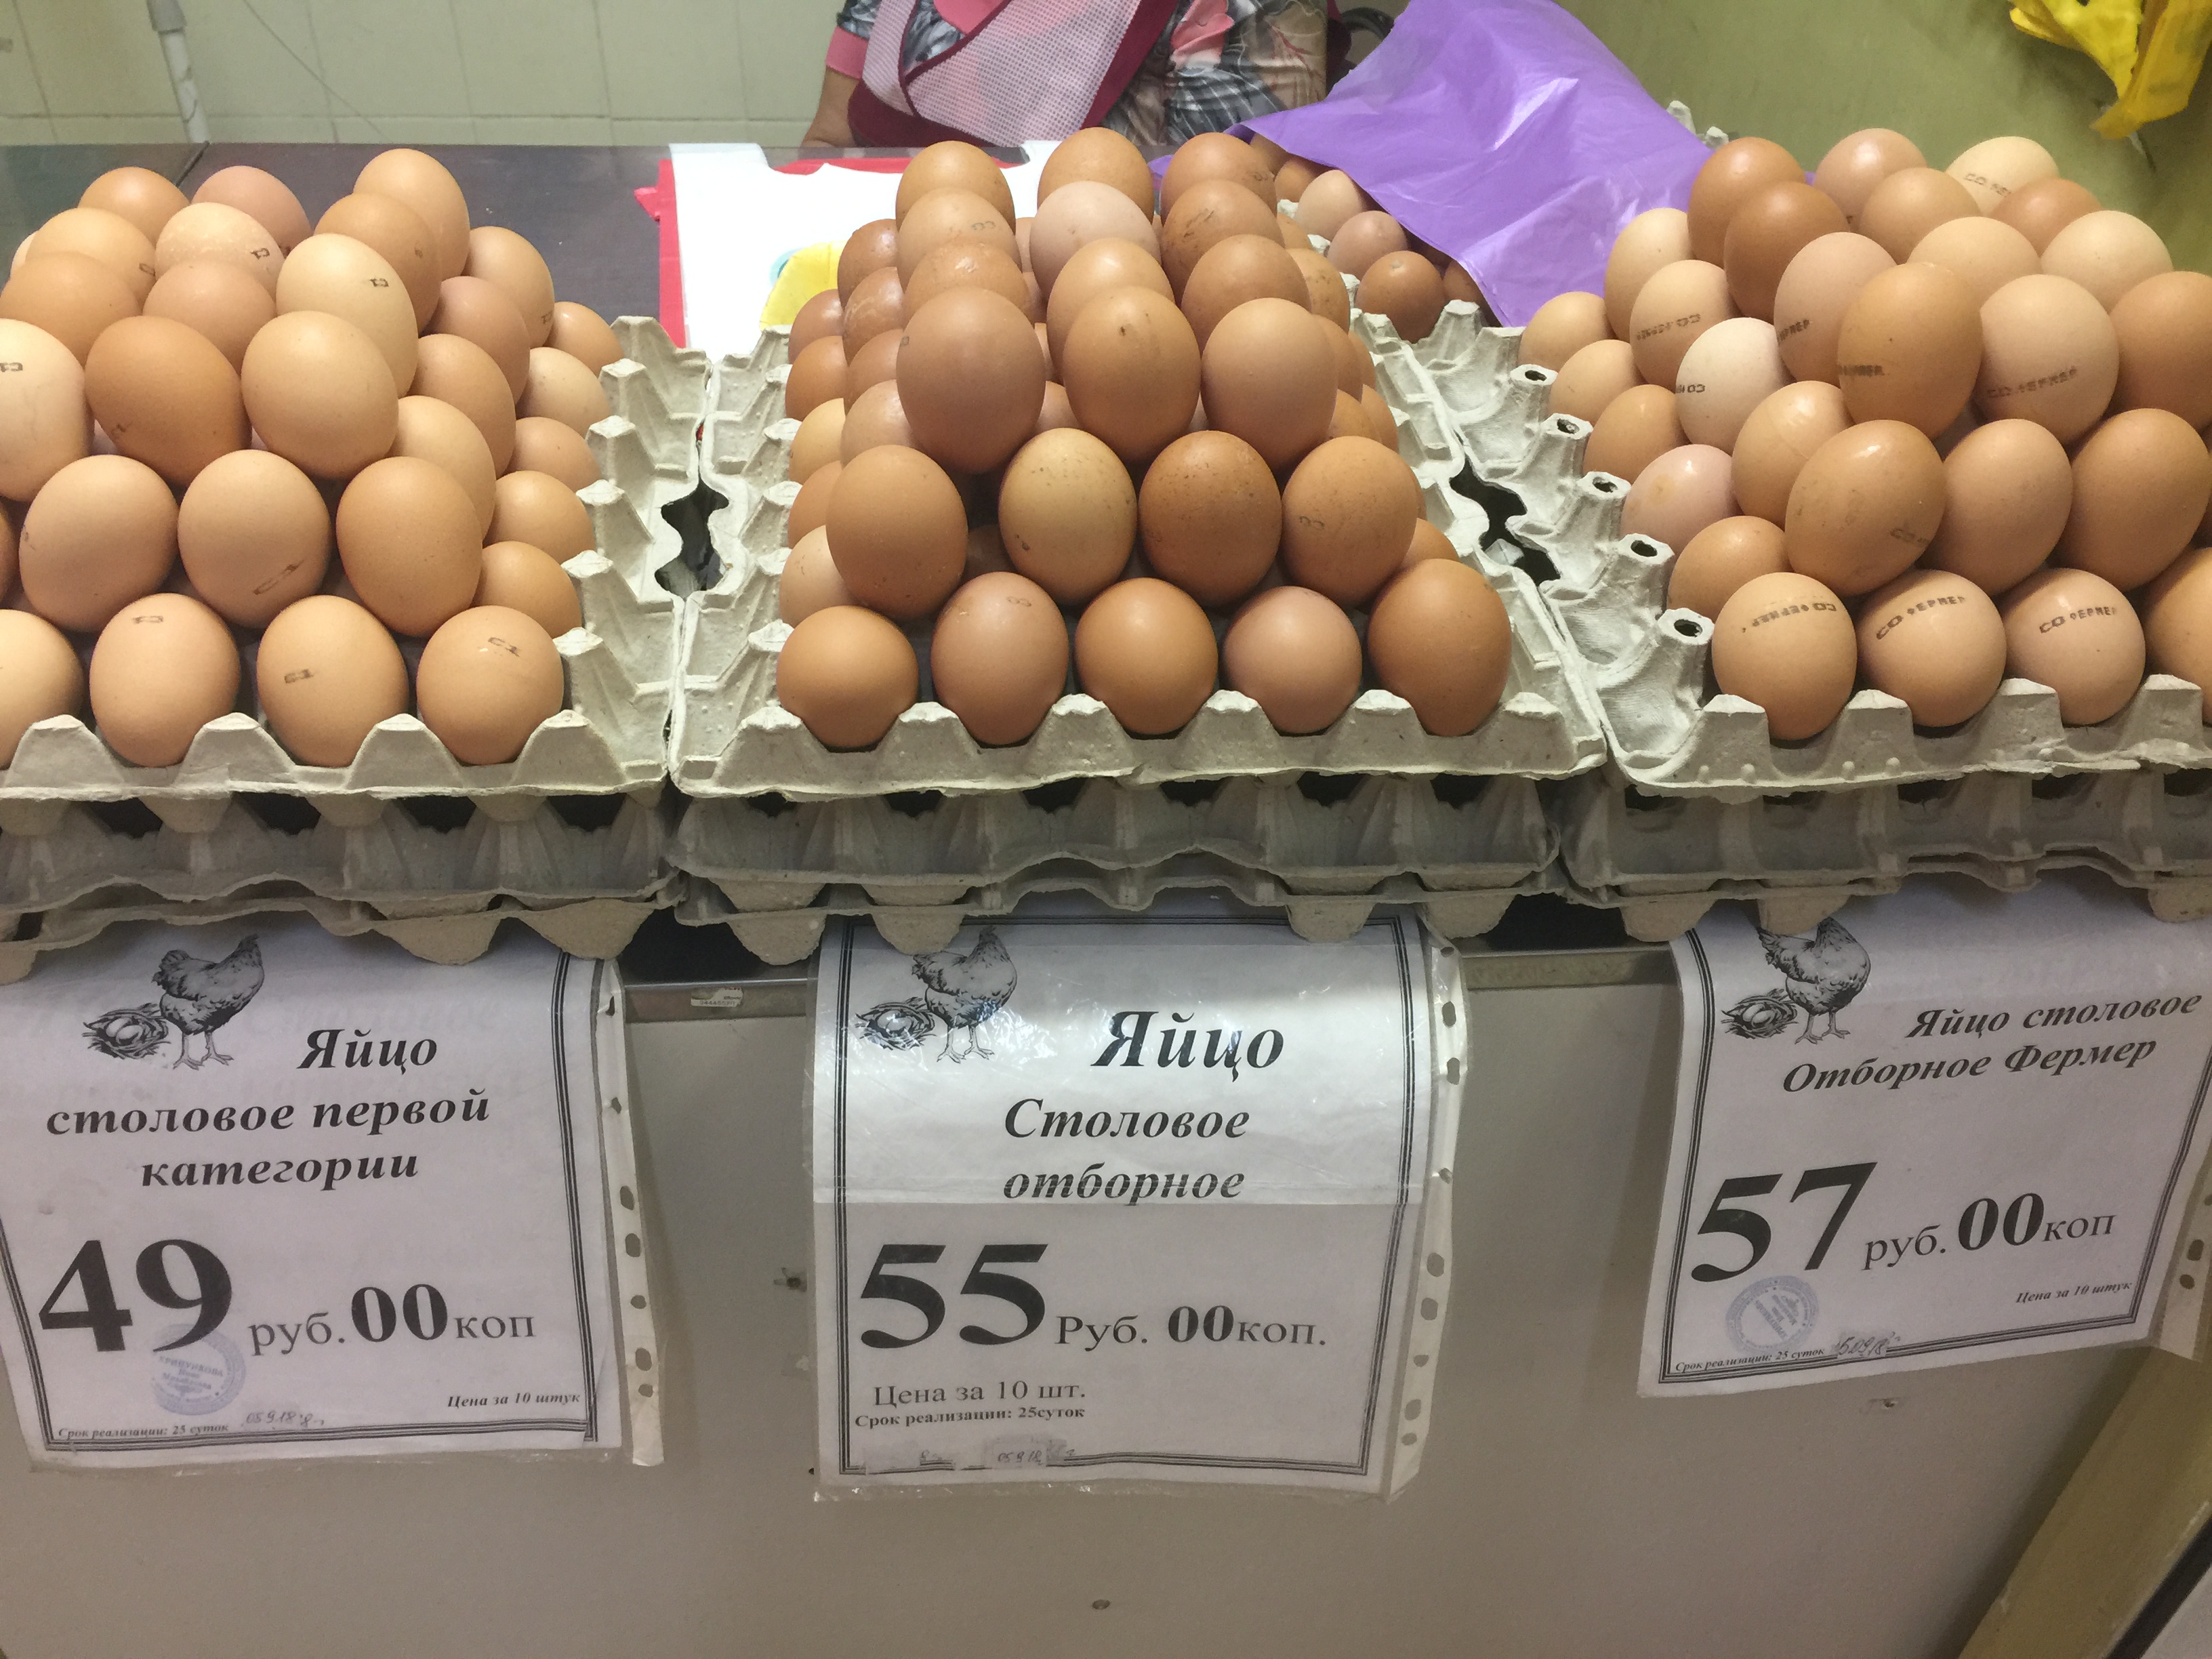 Сколько стоит яйцо сегодня. Яйца в магазине. Яйцо куриное. Сорта яиц. Категории яиц.